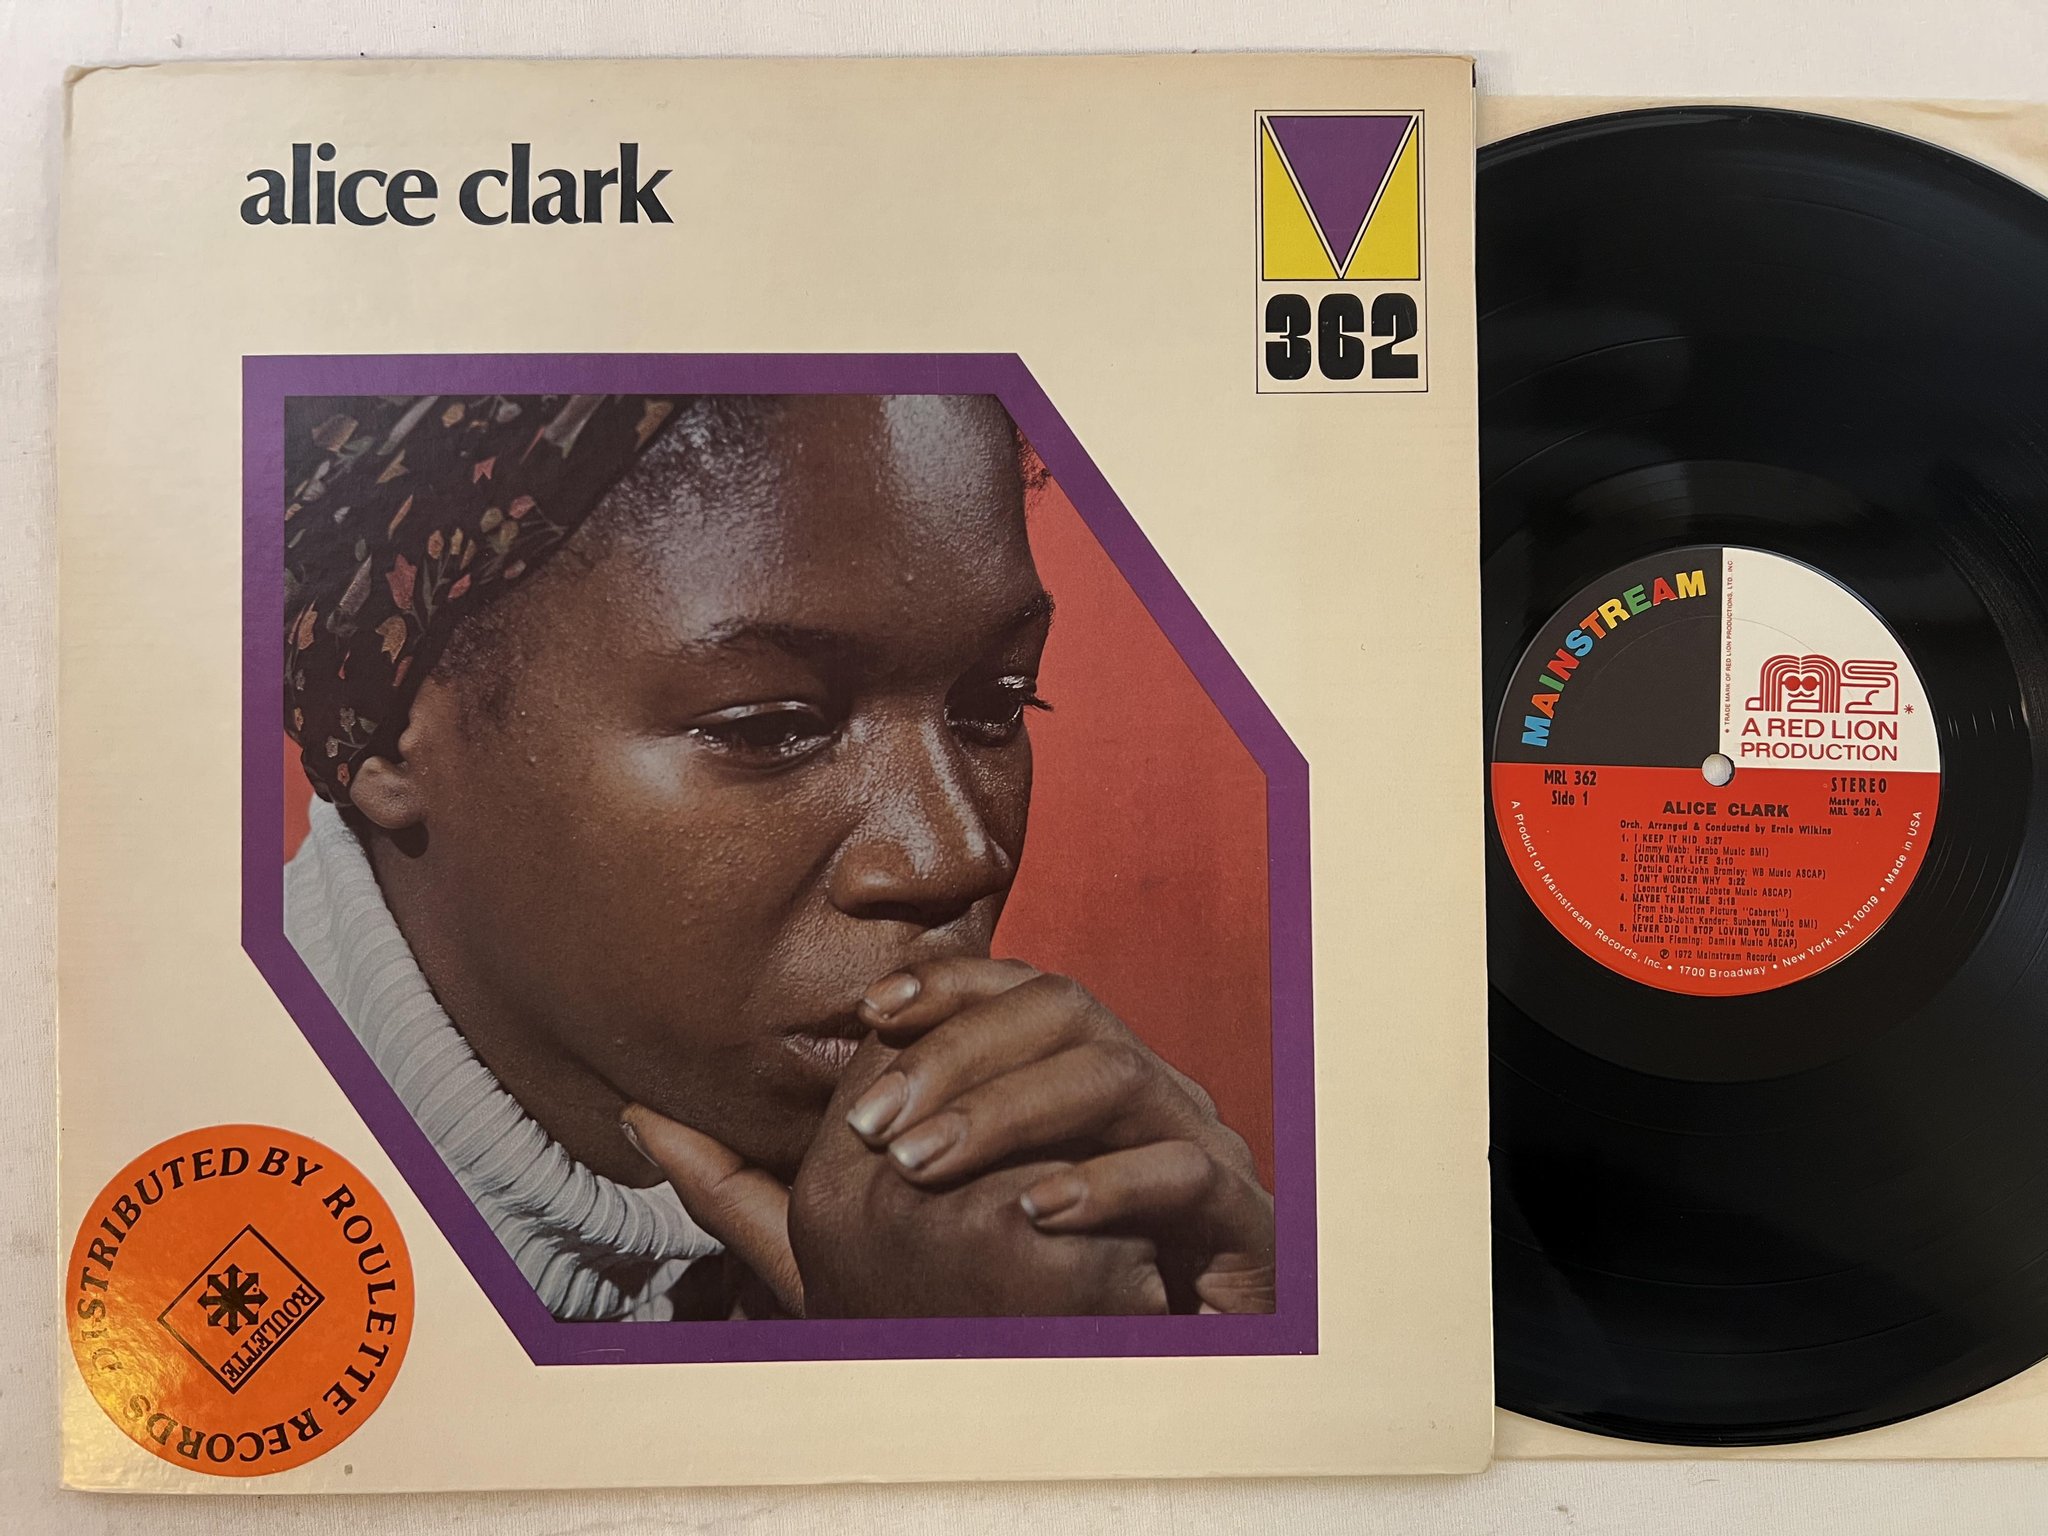 Omslagsbild för skivan ALICE CLARK s/t LP -72 US MAINSTREAM MRL 362 ** KILLER SOUL ALBUM **